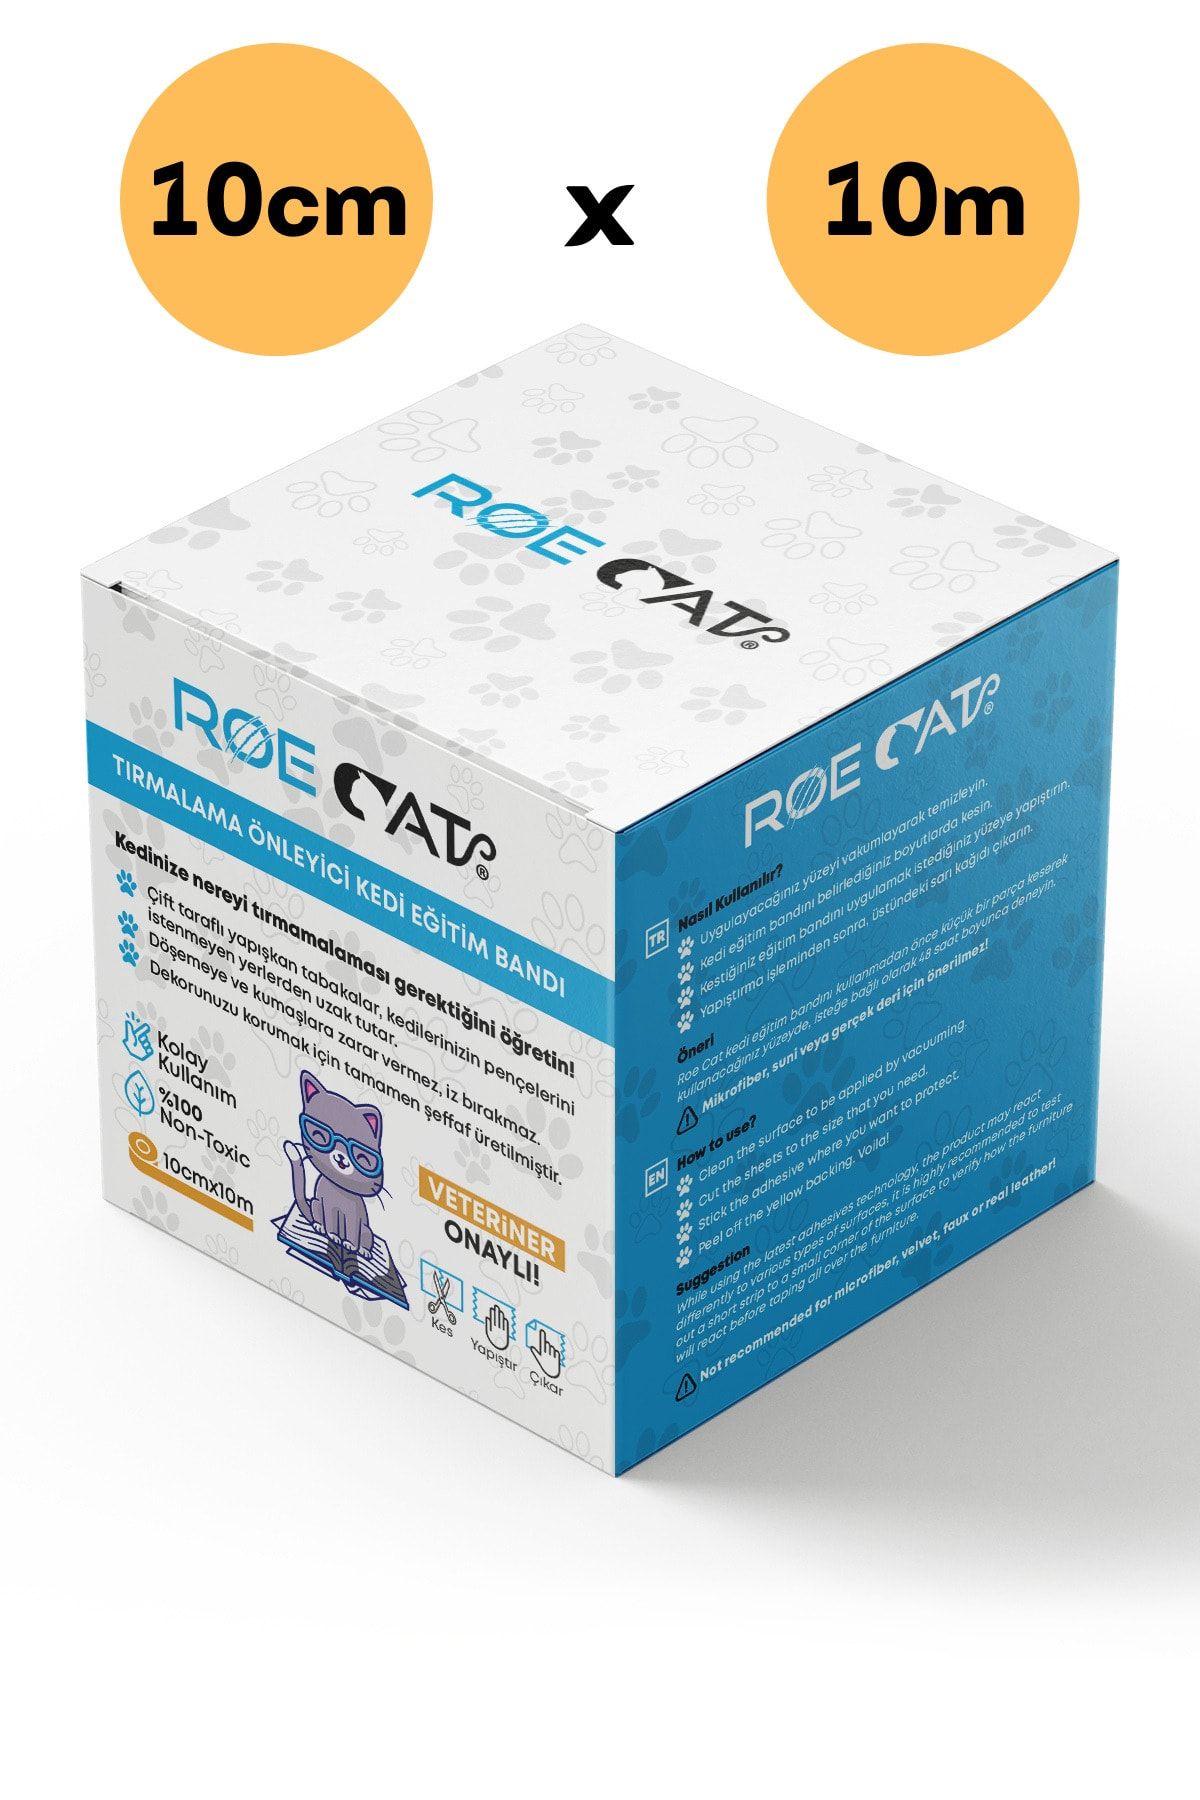 Roe Cat Kedi Eğitim Bandı, Mobilyalar Için Tırmalamaya Karşı Önleyici, %100 Şeffaf, Non-toxic, 10cm X 10m